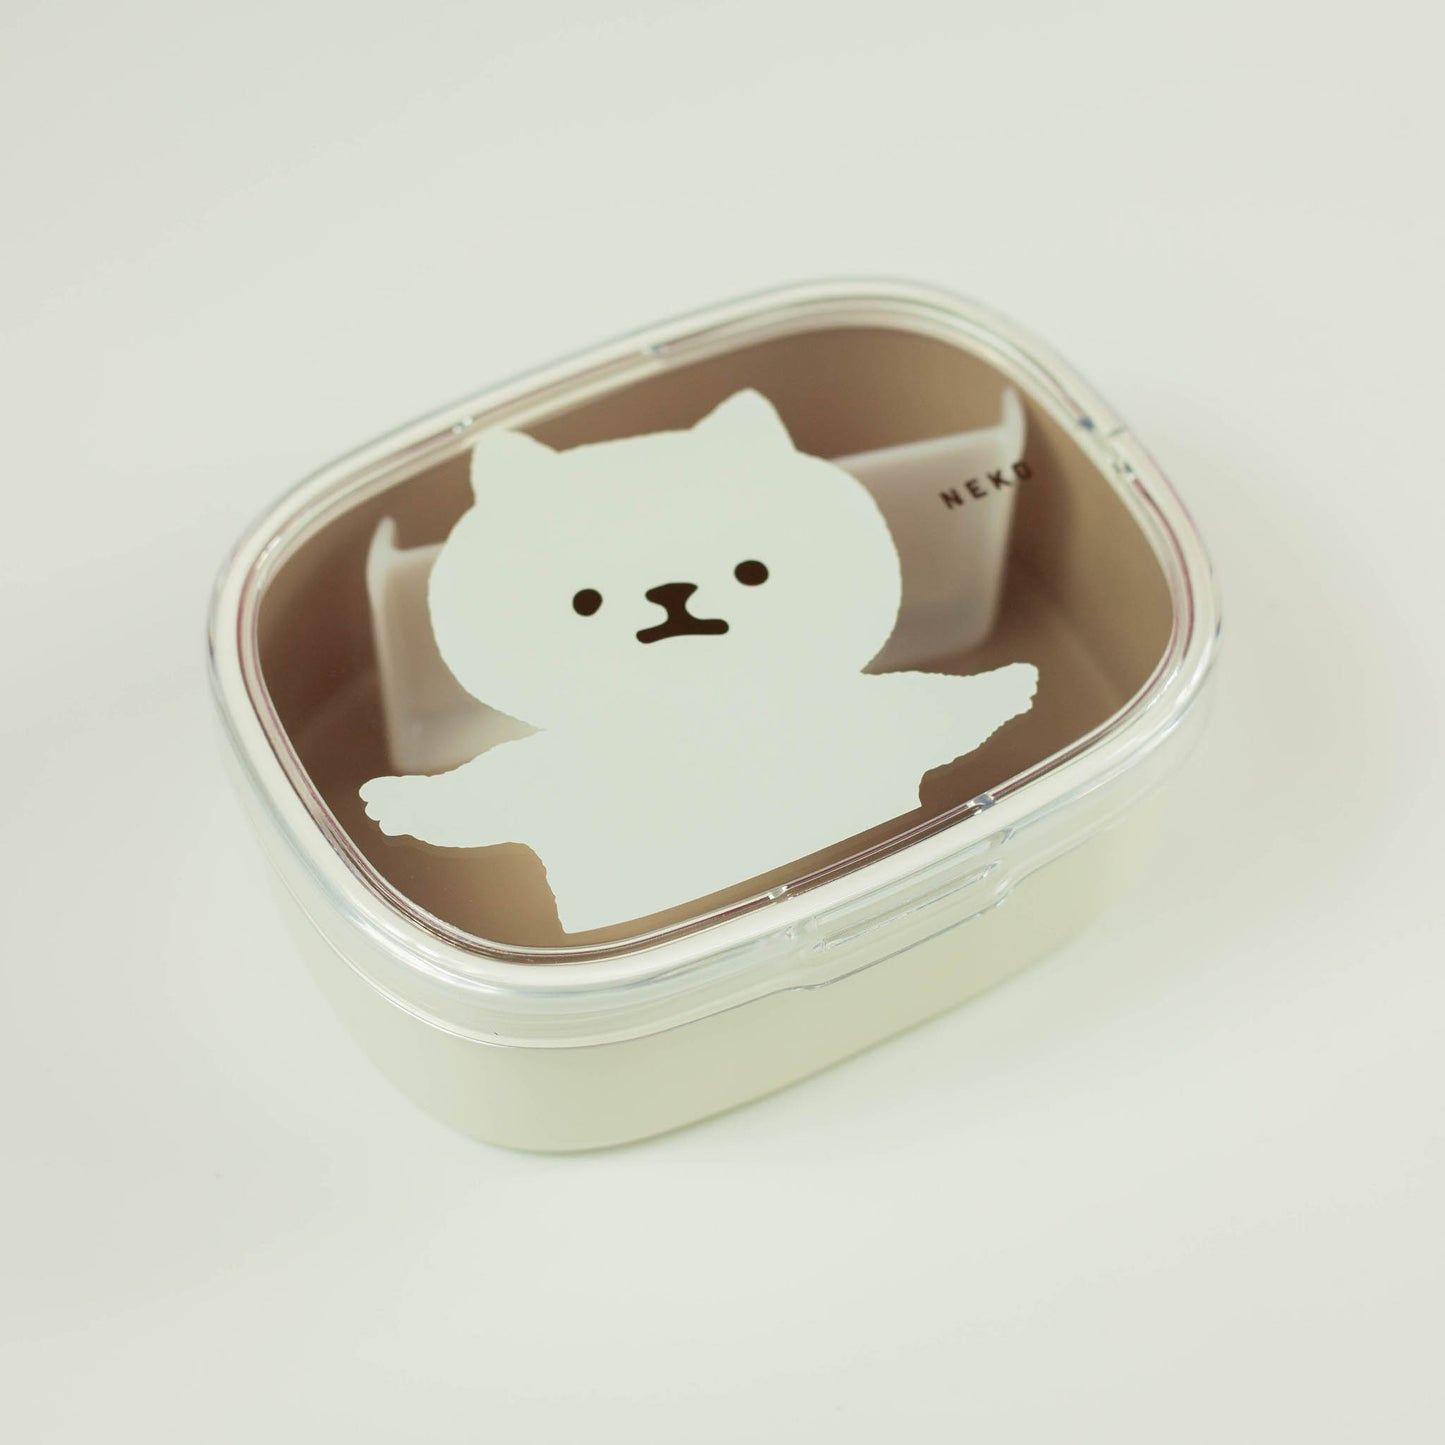 Animal Friends Bento Box 600 ml | Neko (Katze)